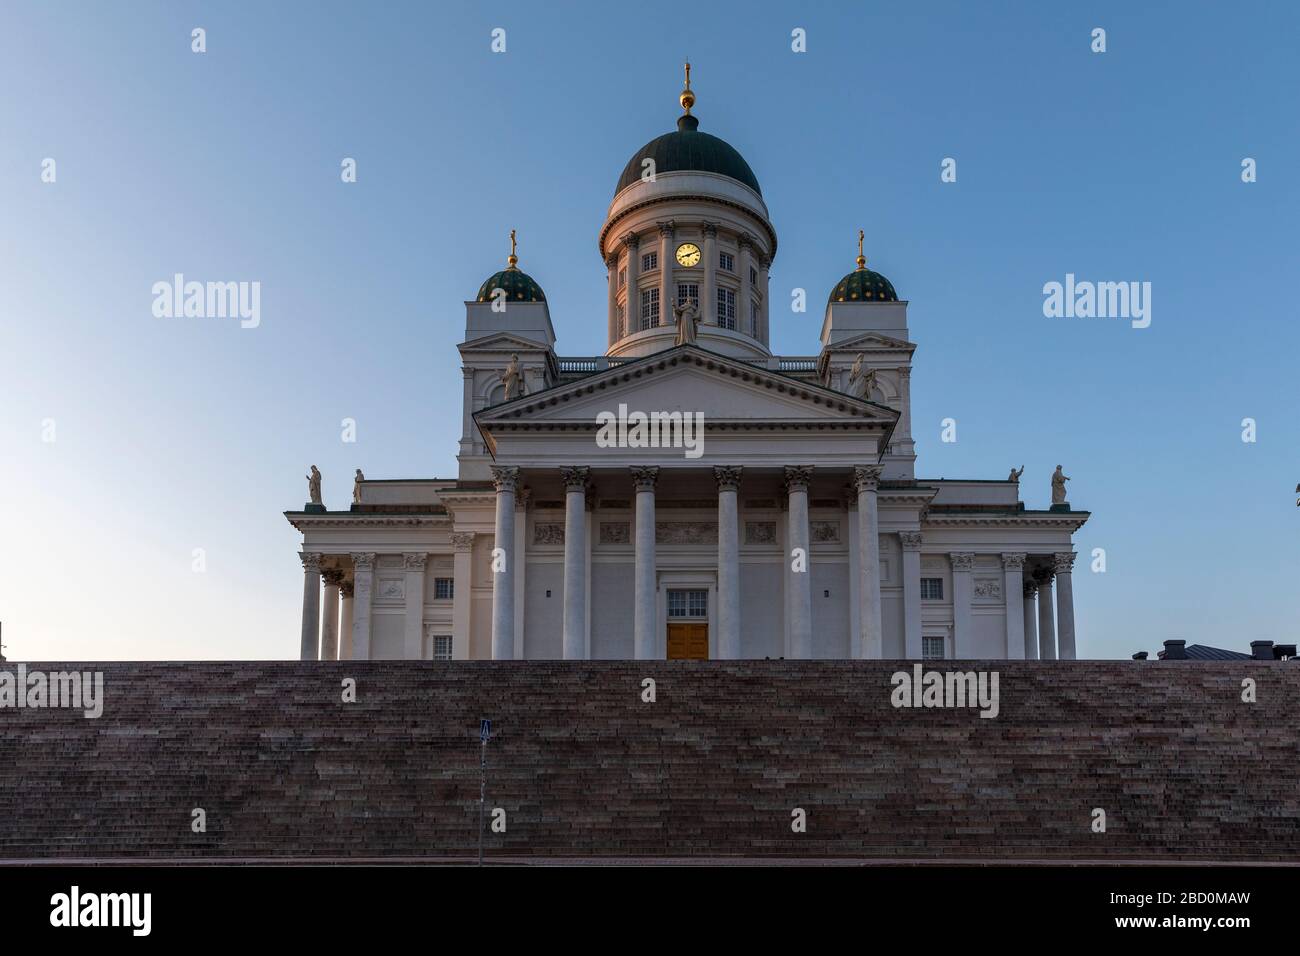 Die Kathedrale von Helsinki ist ein wichtiges Wahrzeichen der finnischen Hauptstadt. Normalerweise ist es von Touristen überfüllt, aber aufgrund der Coronavirus Pandemie jetzt leer. Stockfoto